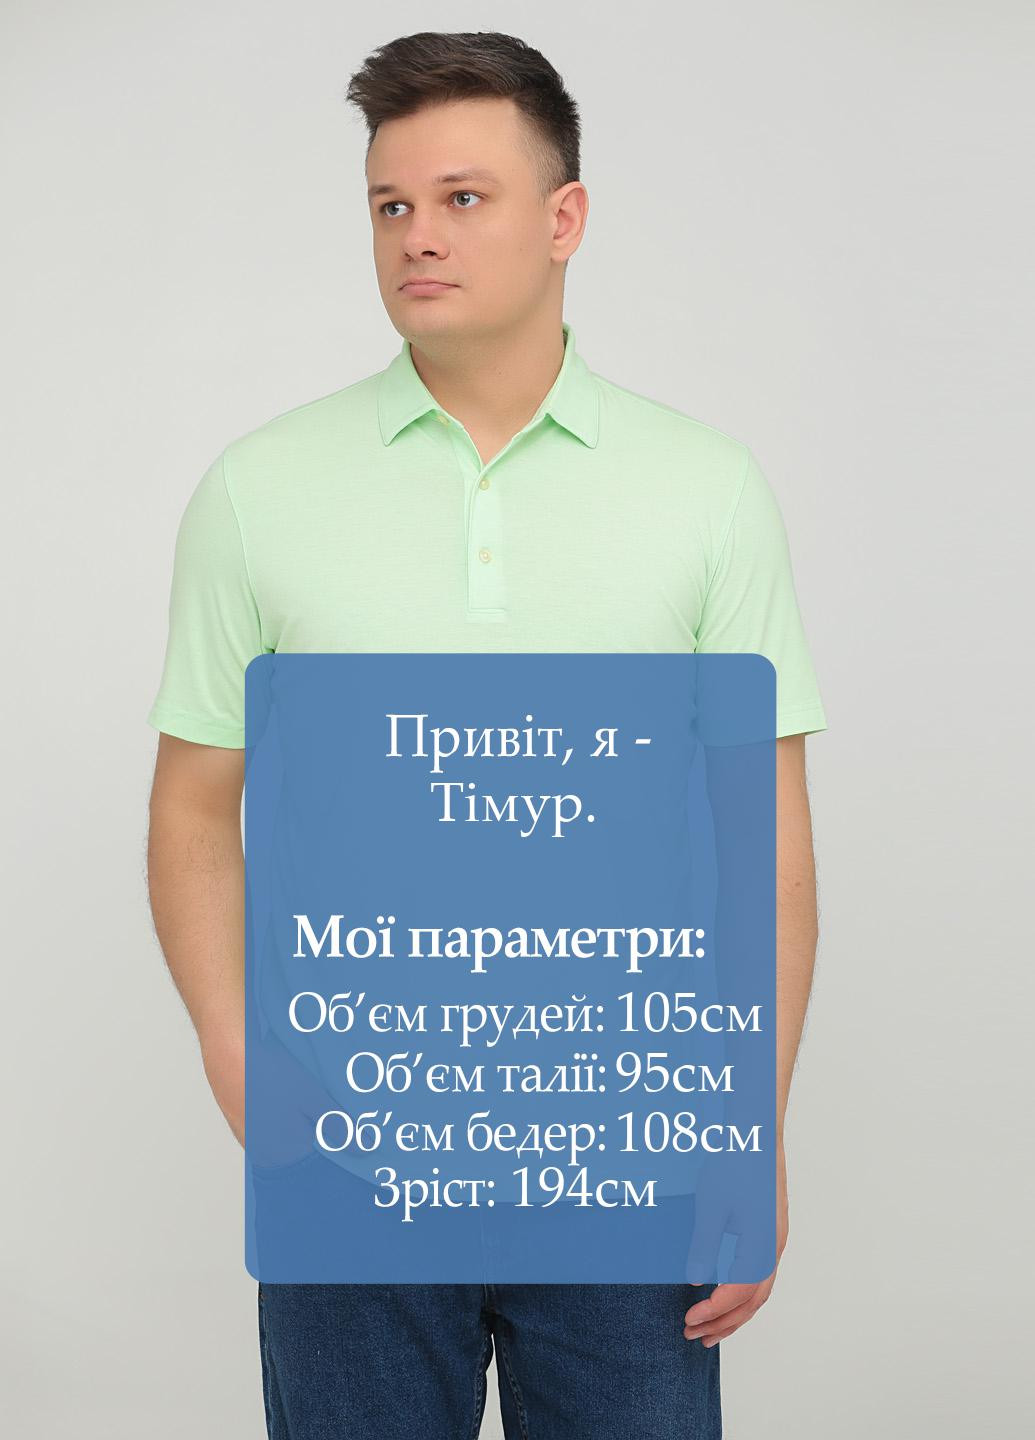 Салатовая футболка-поло для мужчин Greg Norman однотонная